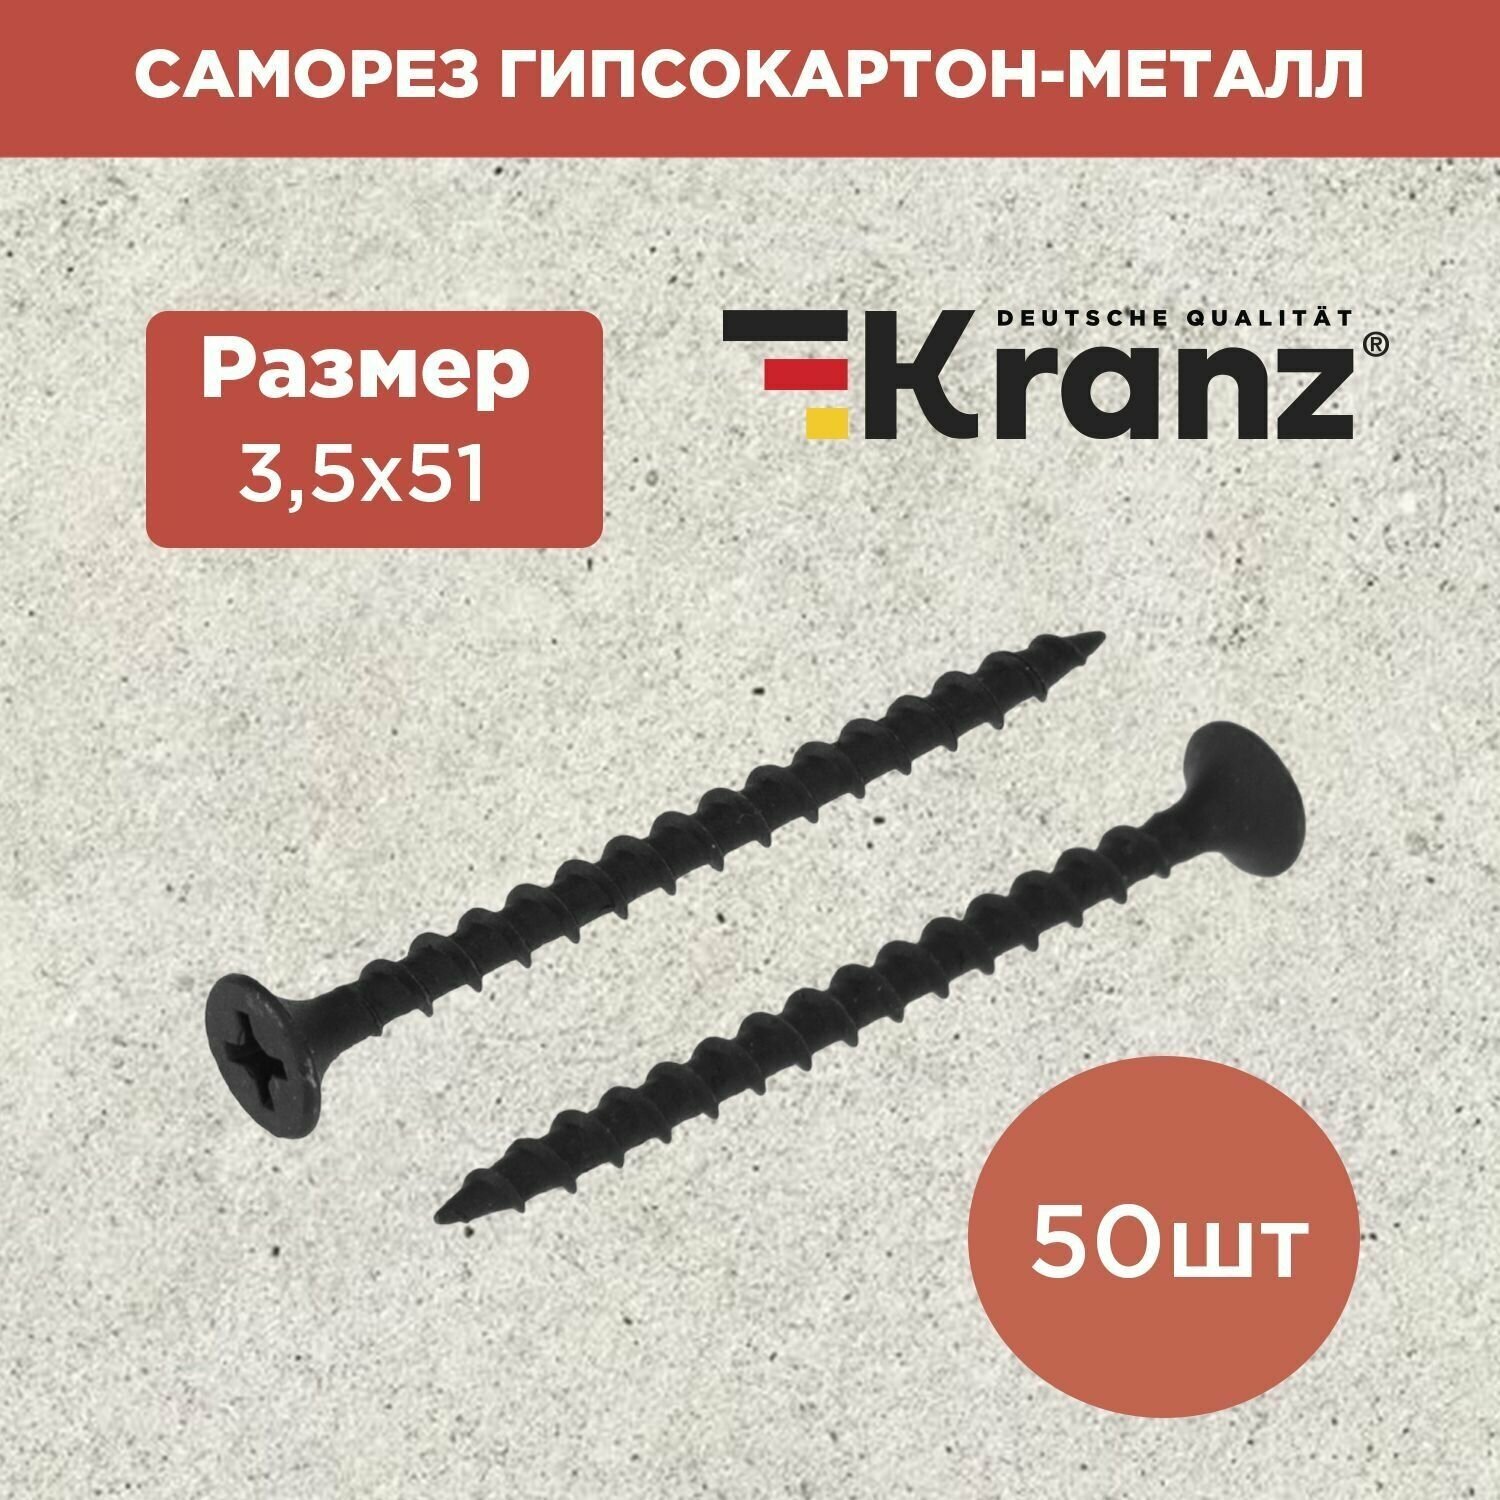 Саморез с противокоррозионным покрытием гипсокартон-металл KRANZ 3.5х51, пакет 50 штук